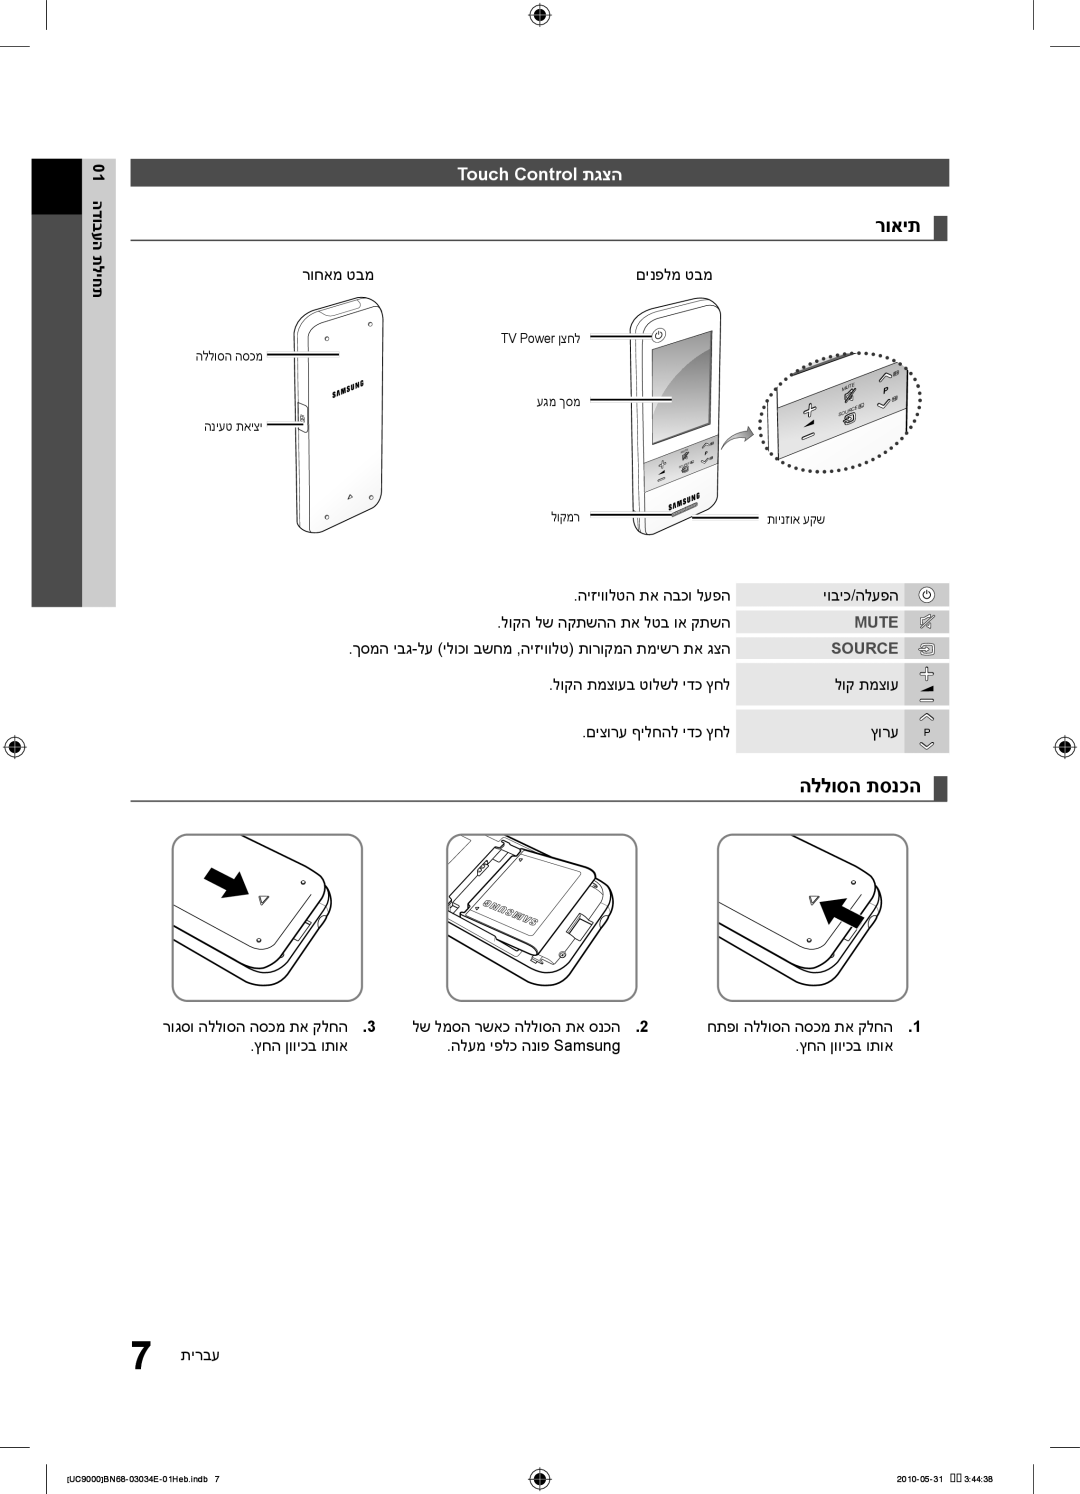 Samsung UA55C9000SRXSQ manual Touch Control תגצה, רוחאמ טבמ 